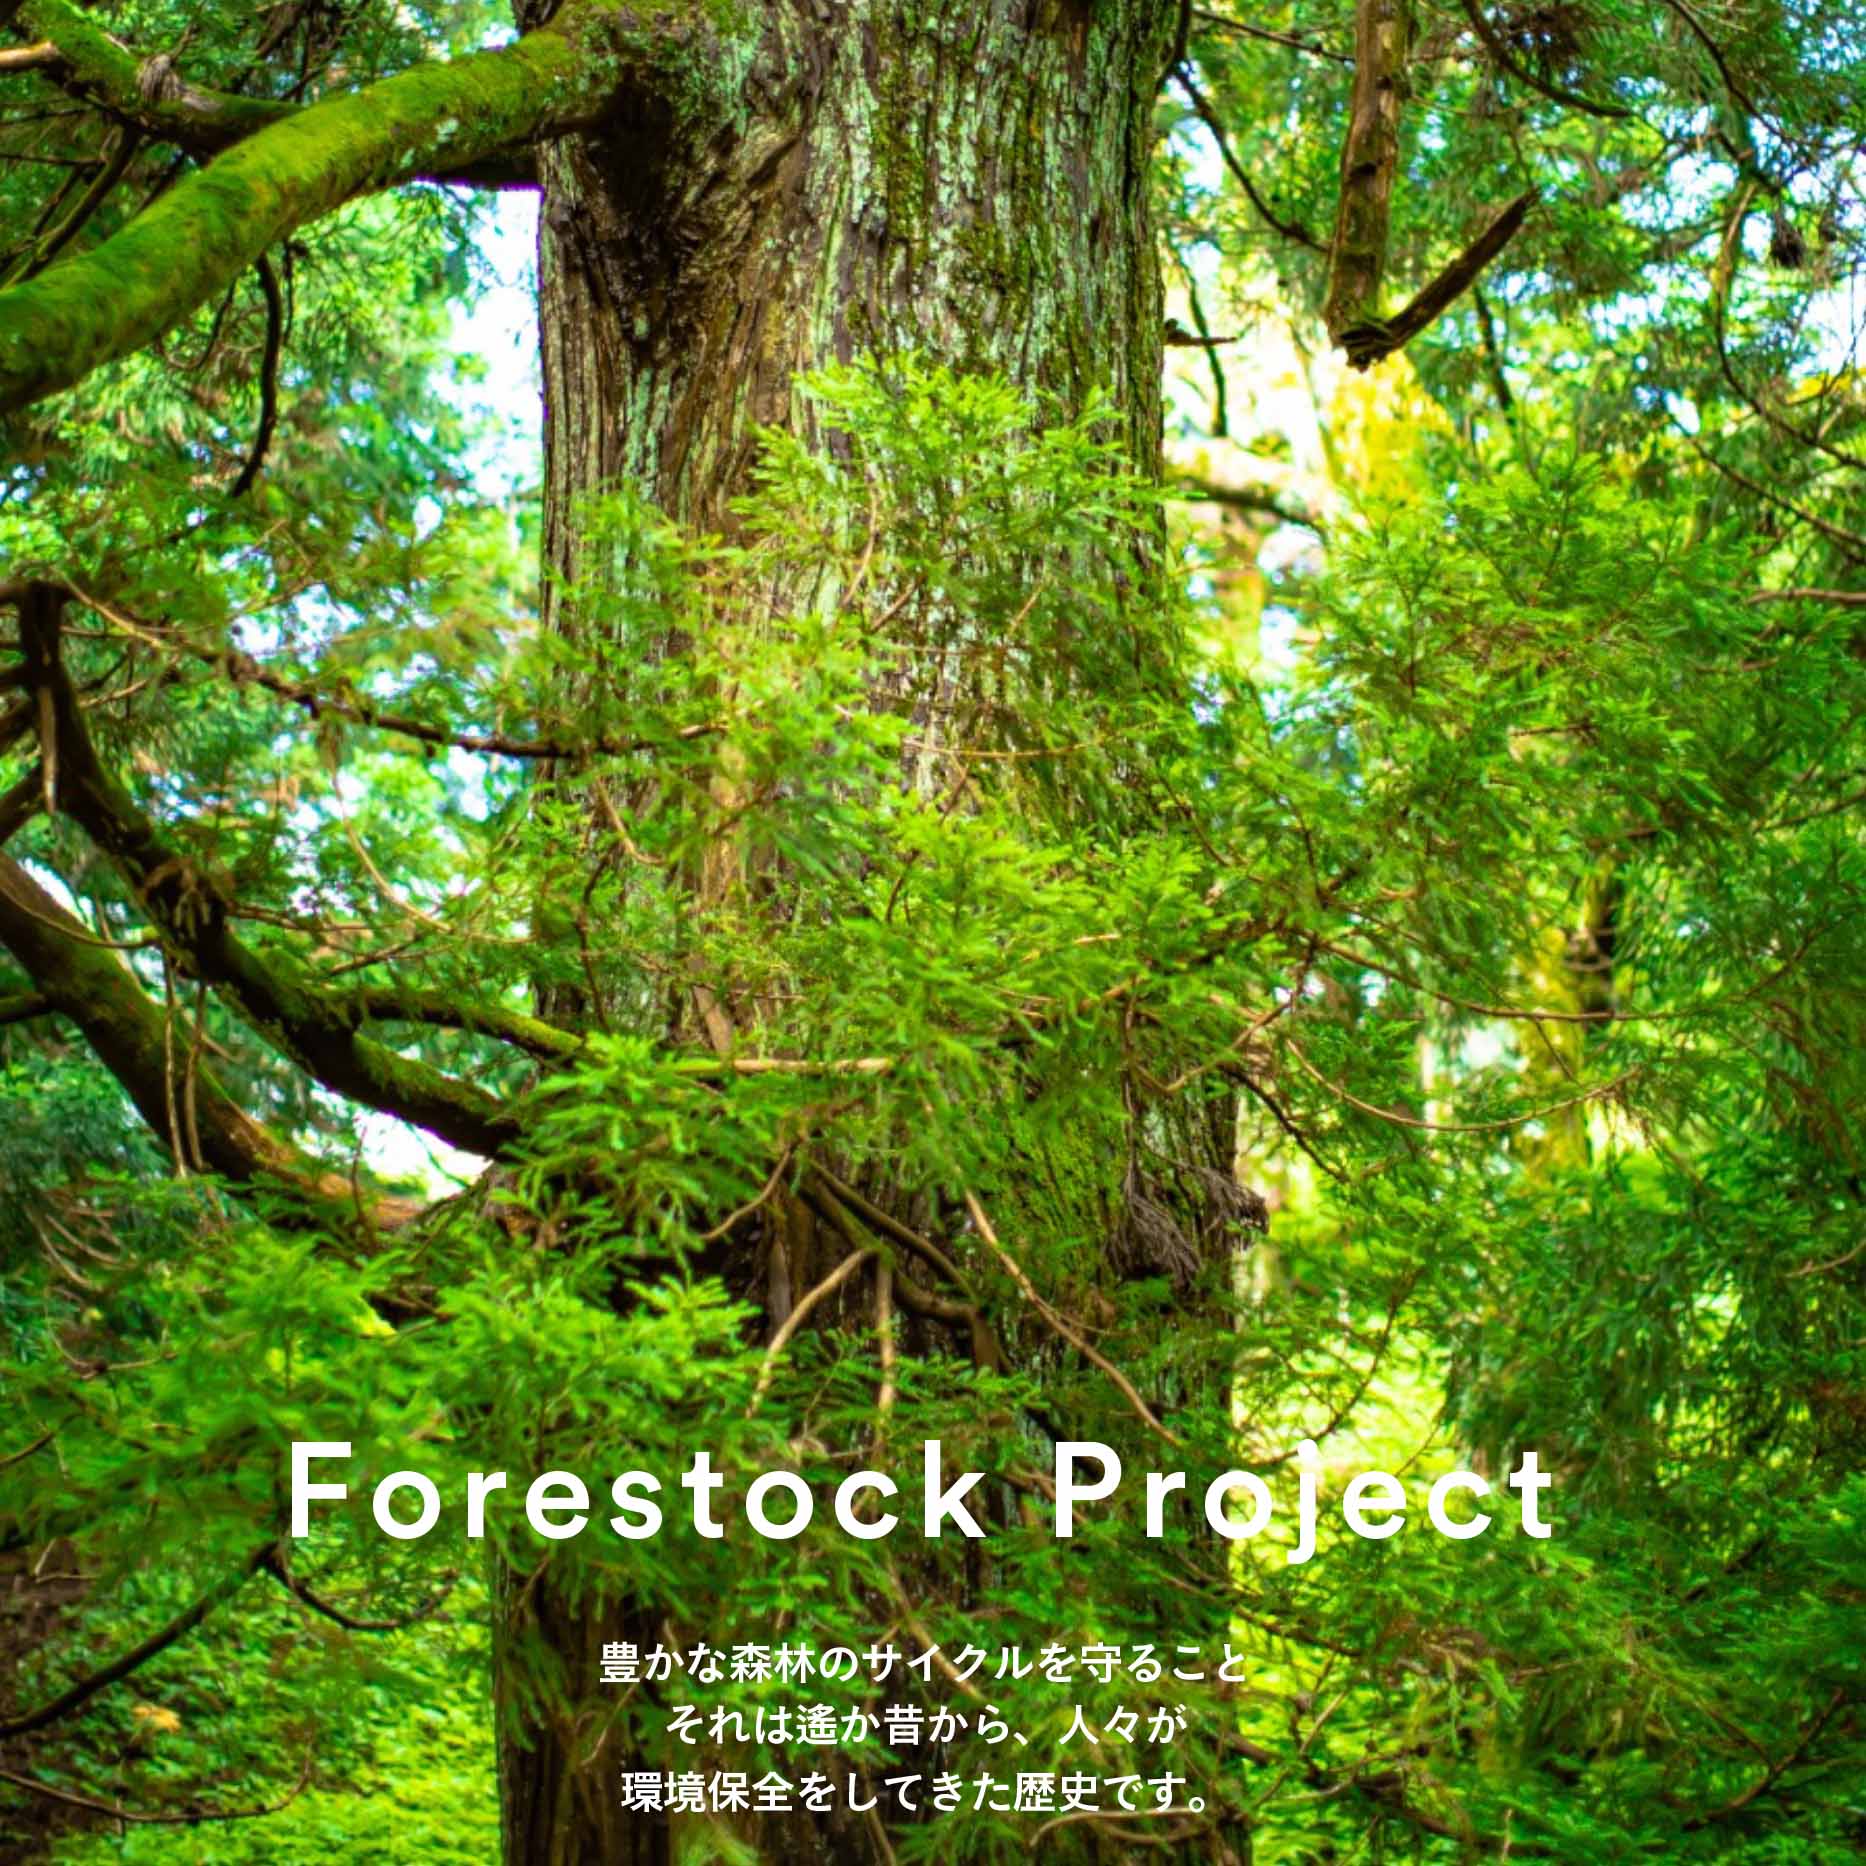 「フォレストック」を活用したナンバースリーの国内森林の保全活動